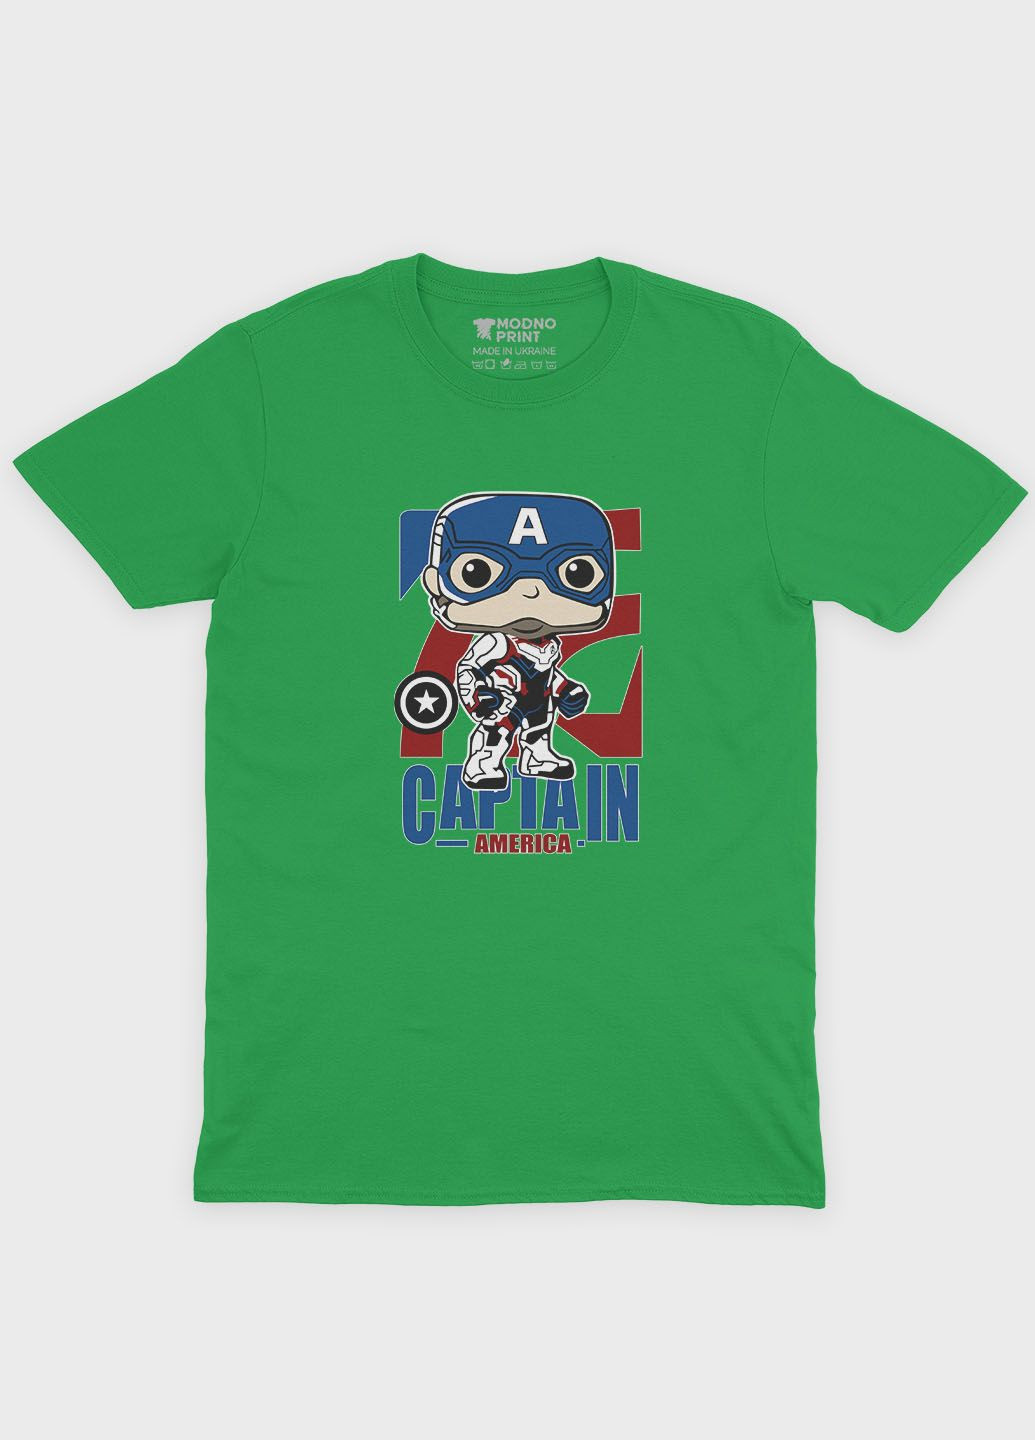 Зелена демісезонна футболка для дівчинки з принтом супергероя - капітан америка (ts001-1-keg-006-022-007-g) Modno